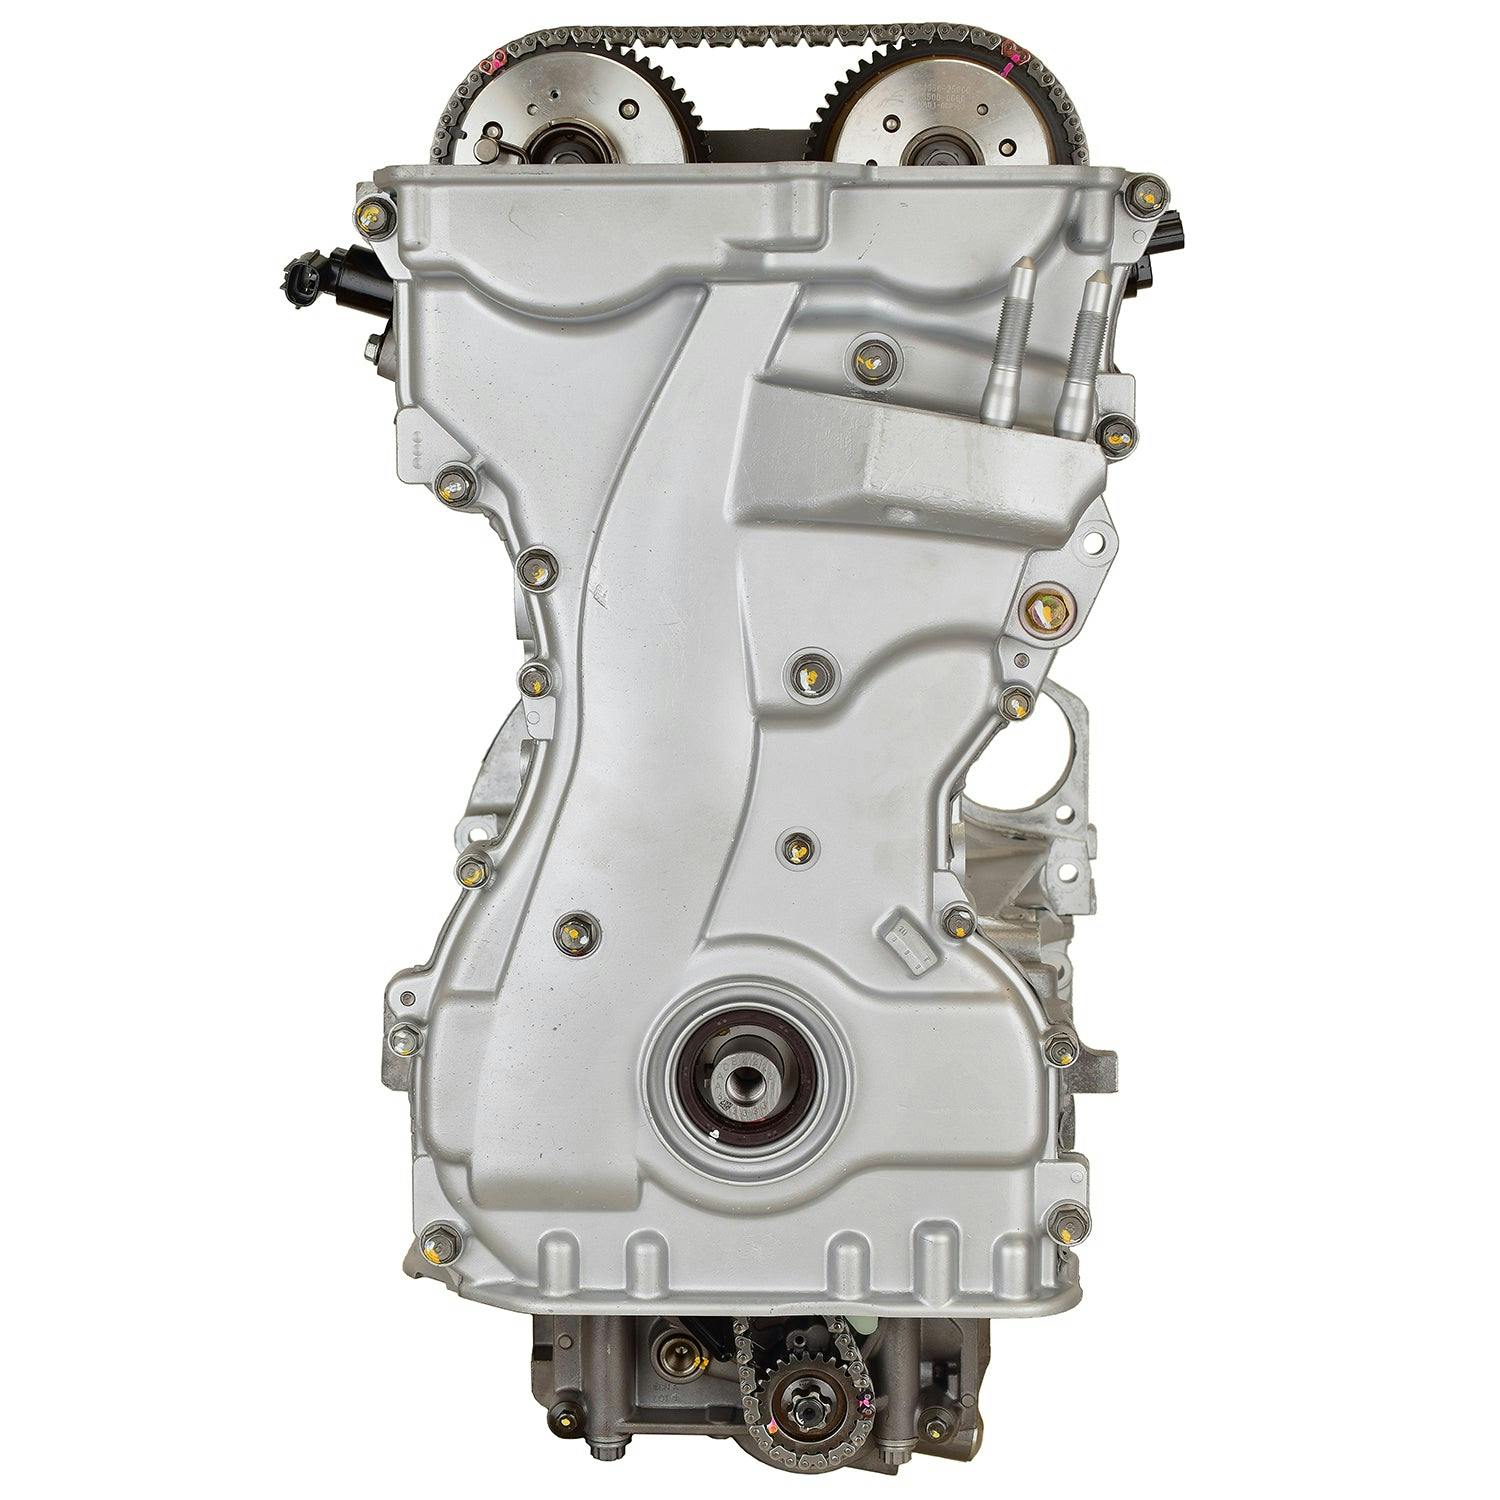 2.4L Inline-4 Engine for 2011-2013 Hyundai Tucson/Kia Sportage